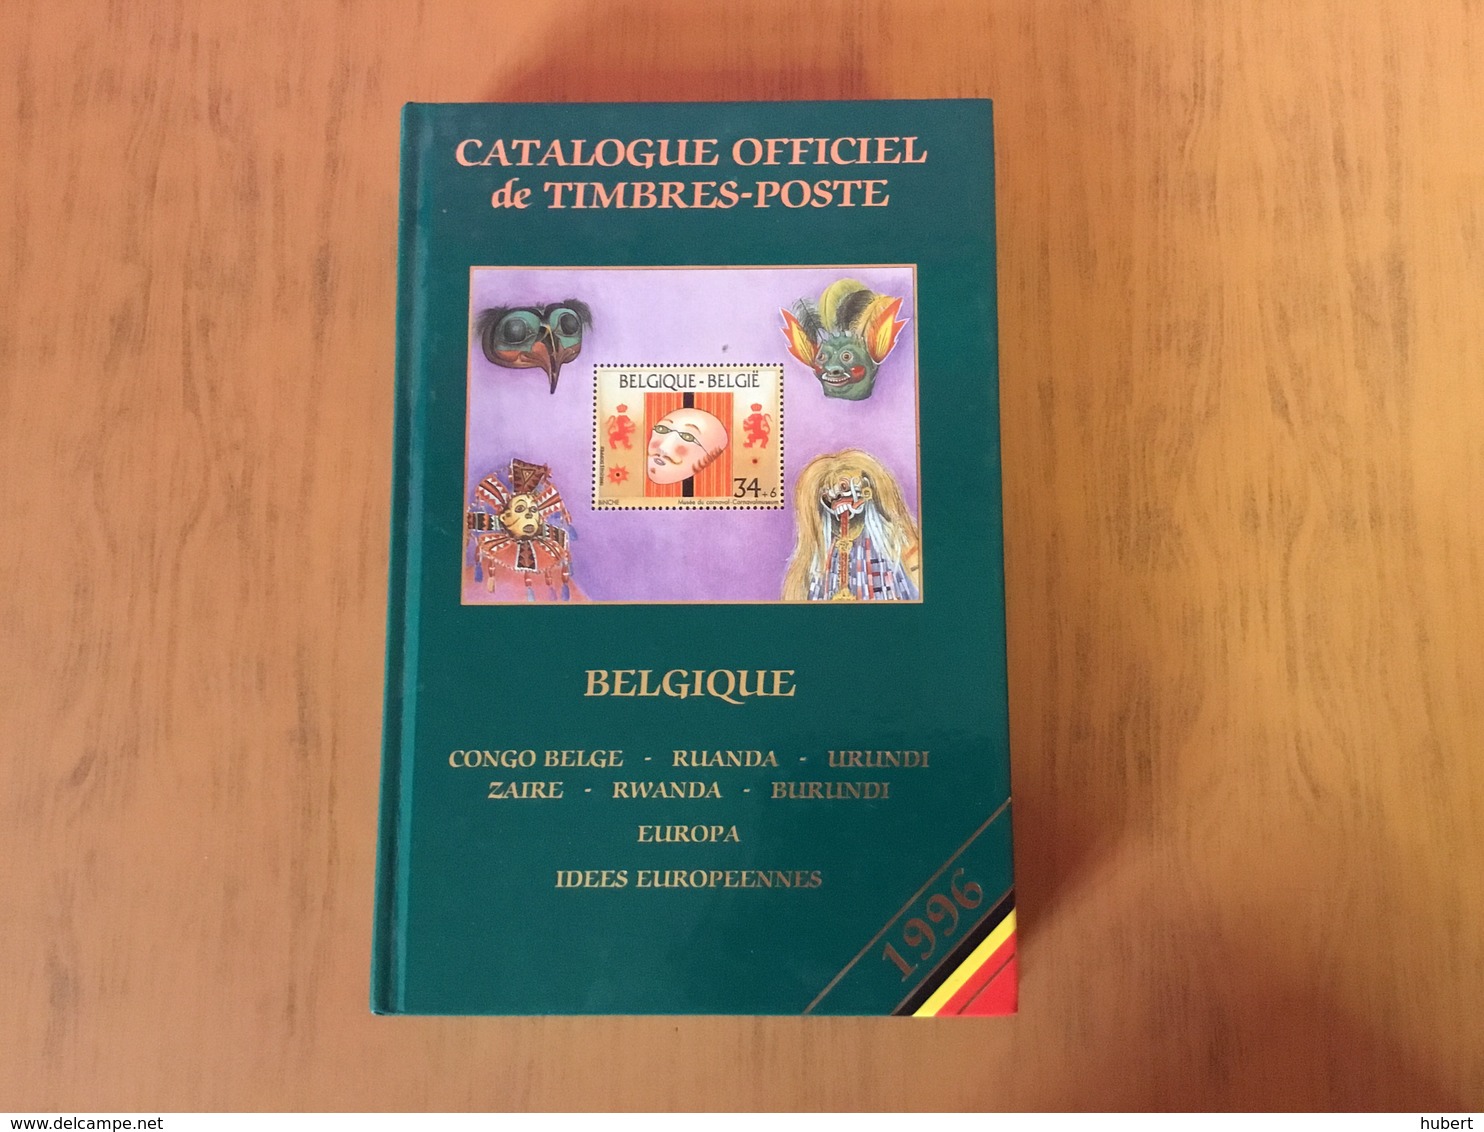 Catalogue Officiel Belgique 1996 Superbe - België